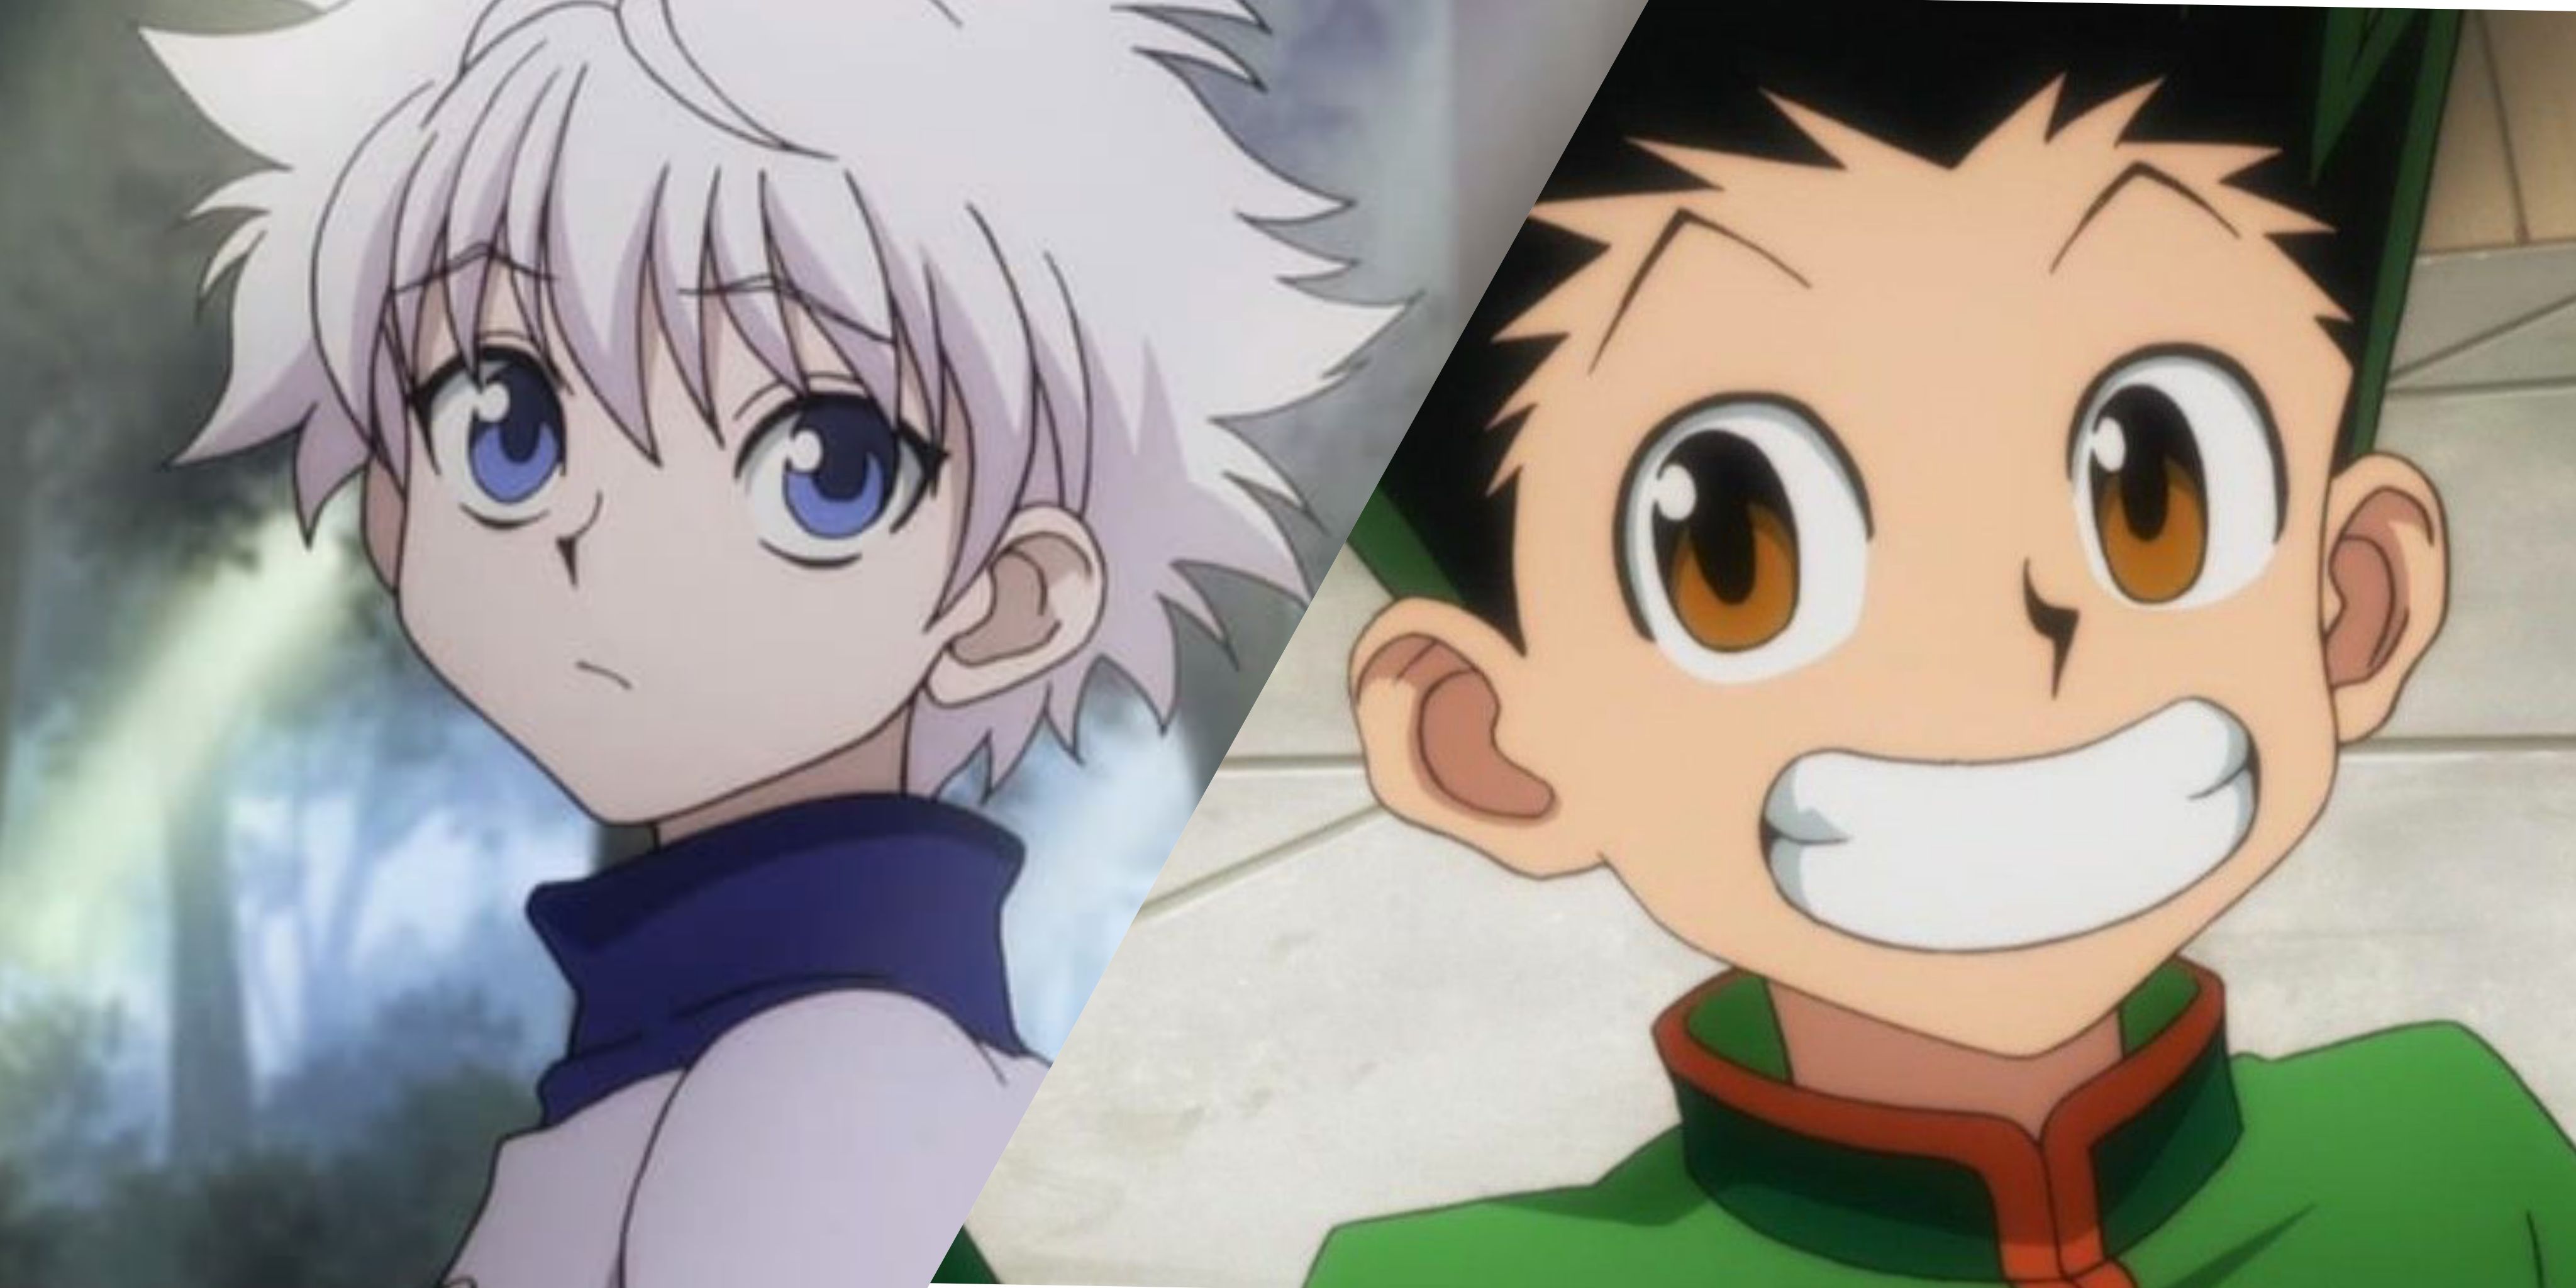 De fleste ikoniske bedste venner duoer i anime